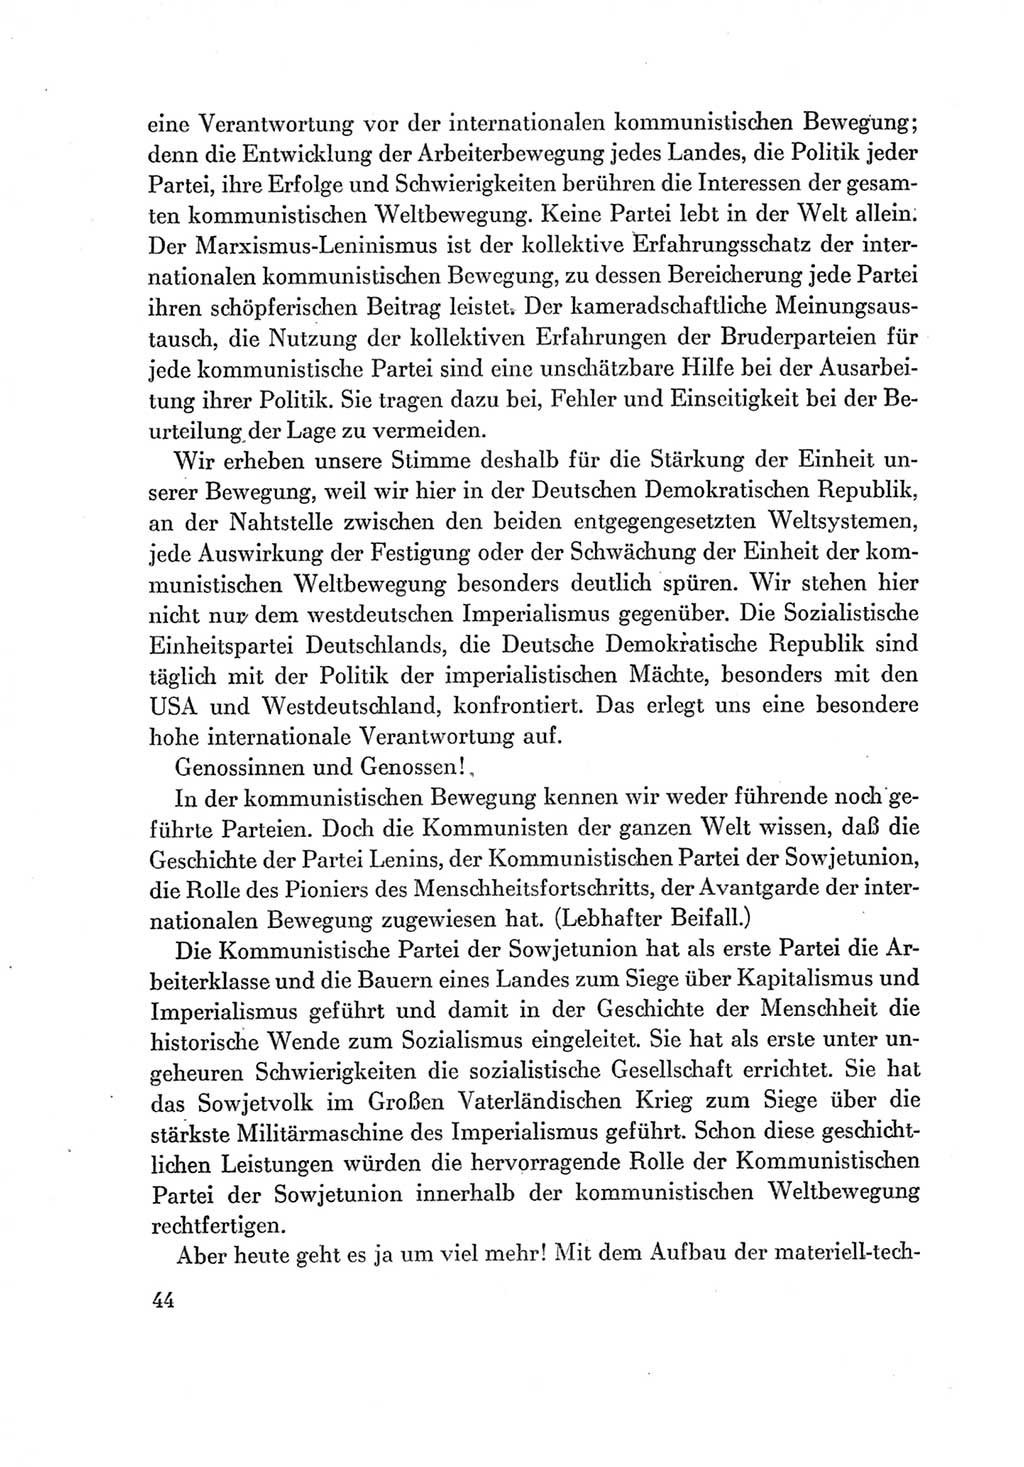 Protokoll der Verhandlungen des Ⅶ. Parteitages der Sozialistischen Einheitspartei Deutschlands (SED) [Deutsche Demokratische Republik (DDR)] 1967, Band Ⅱ, Seite 44 (Prot. Verh. Ⅶ. PT SED DDR 1967, Bd. Ⅱ, S. 44)